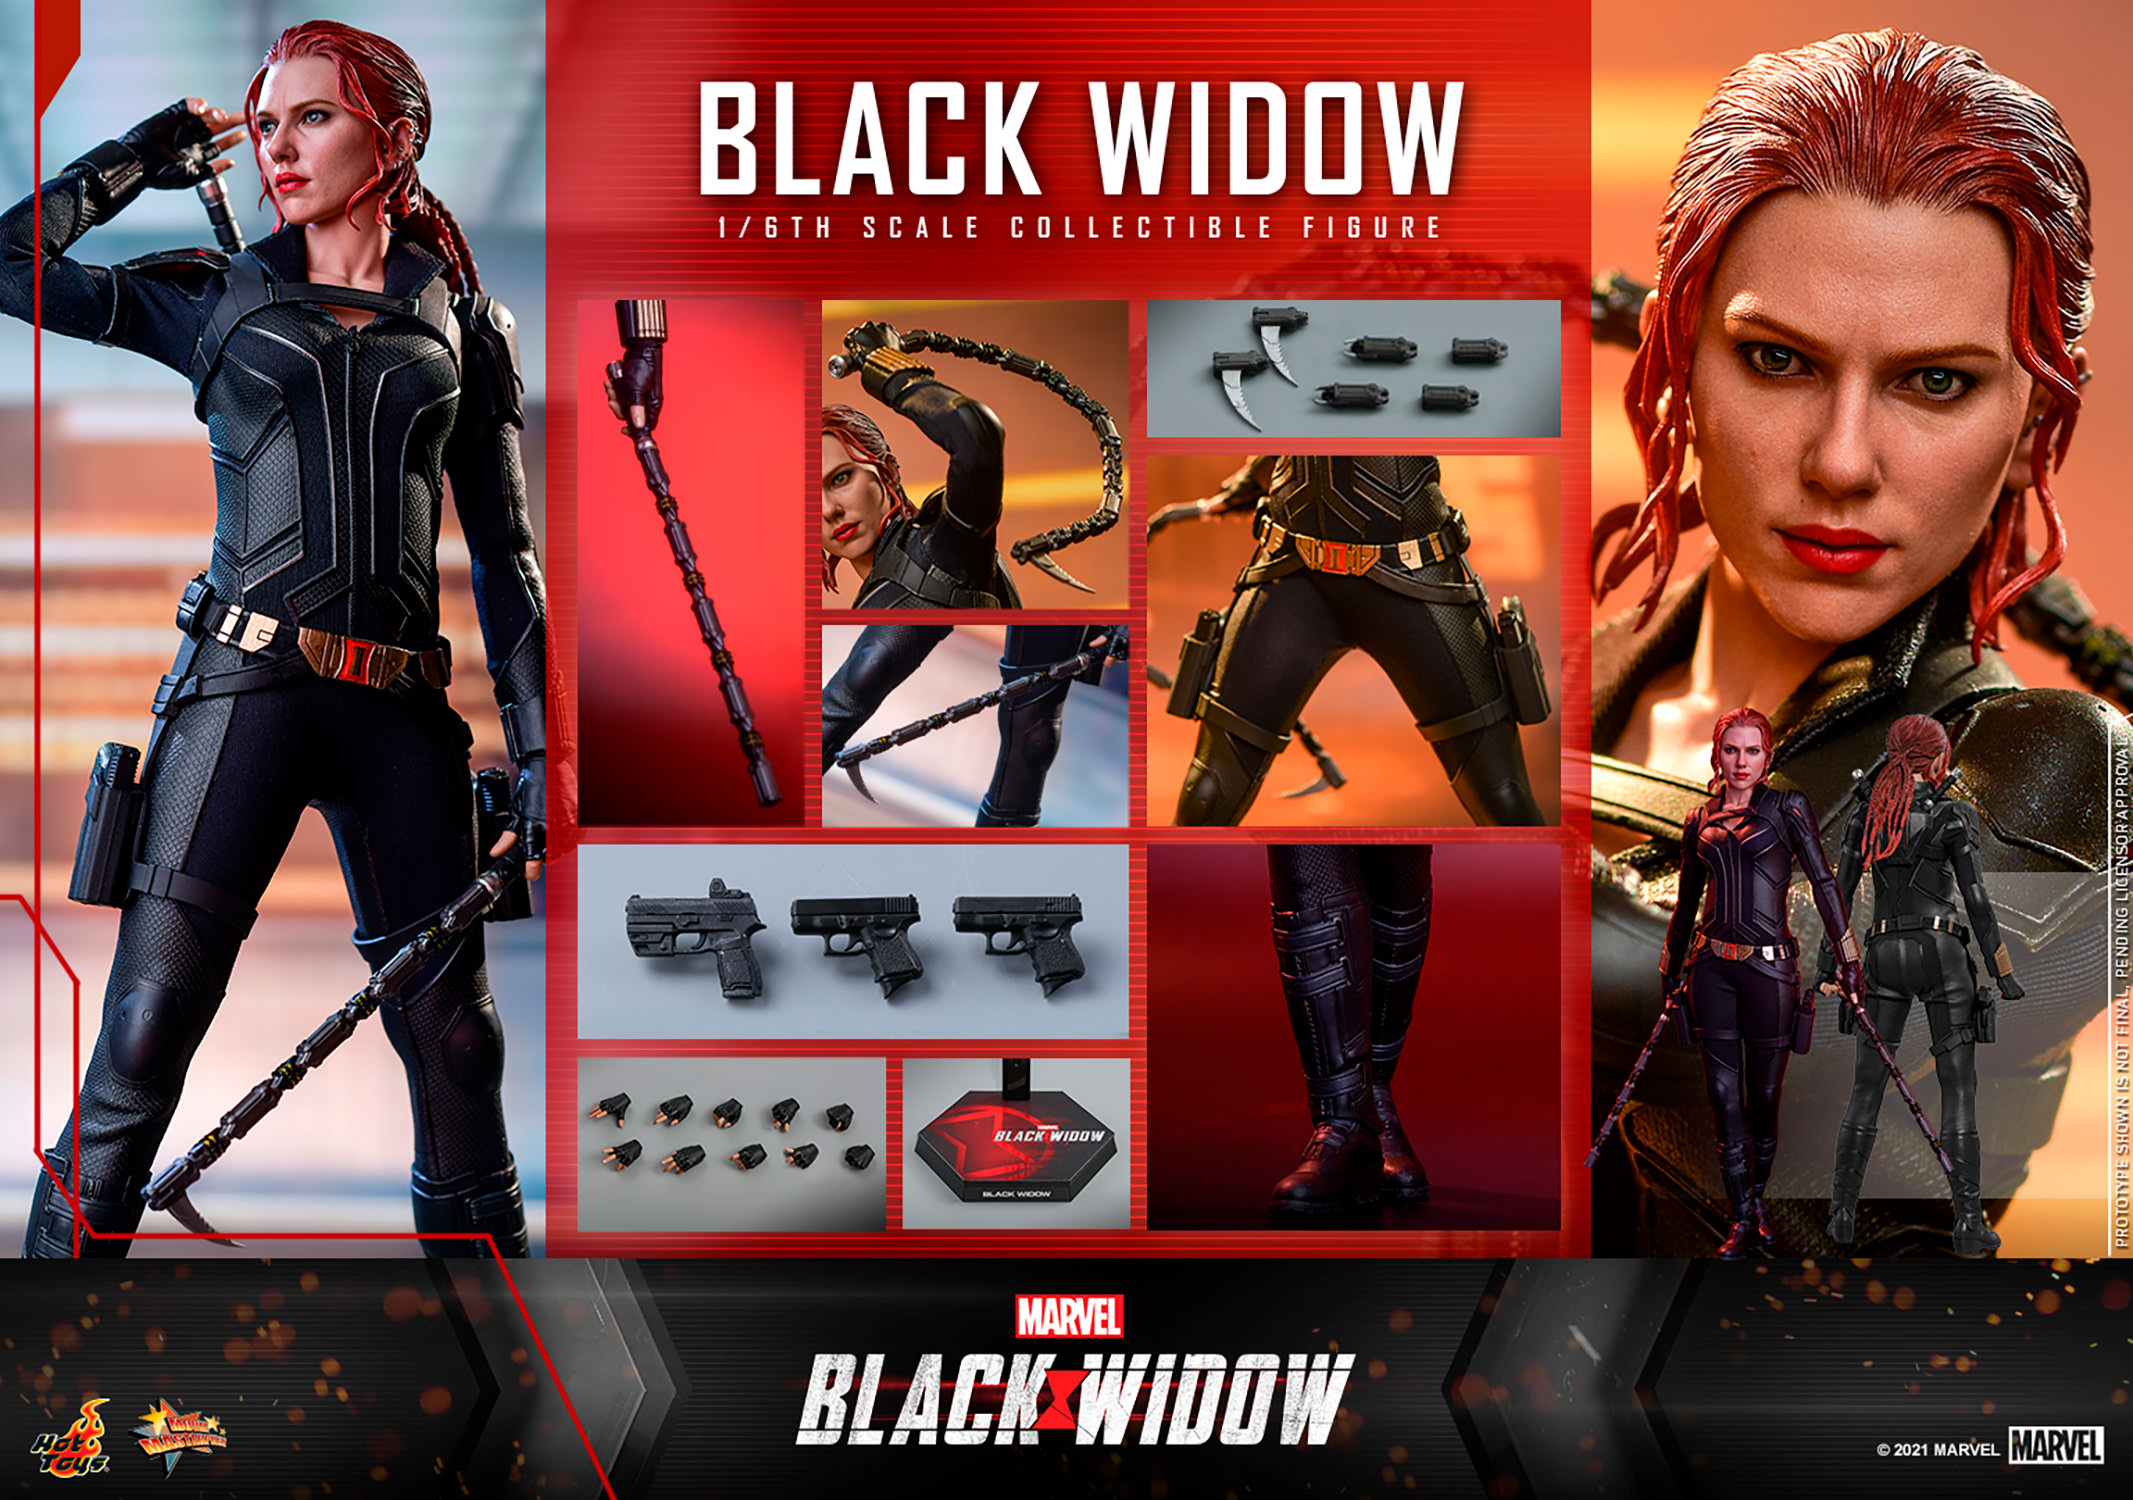 Black widow 2.0 hybrid release date